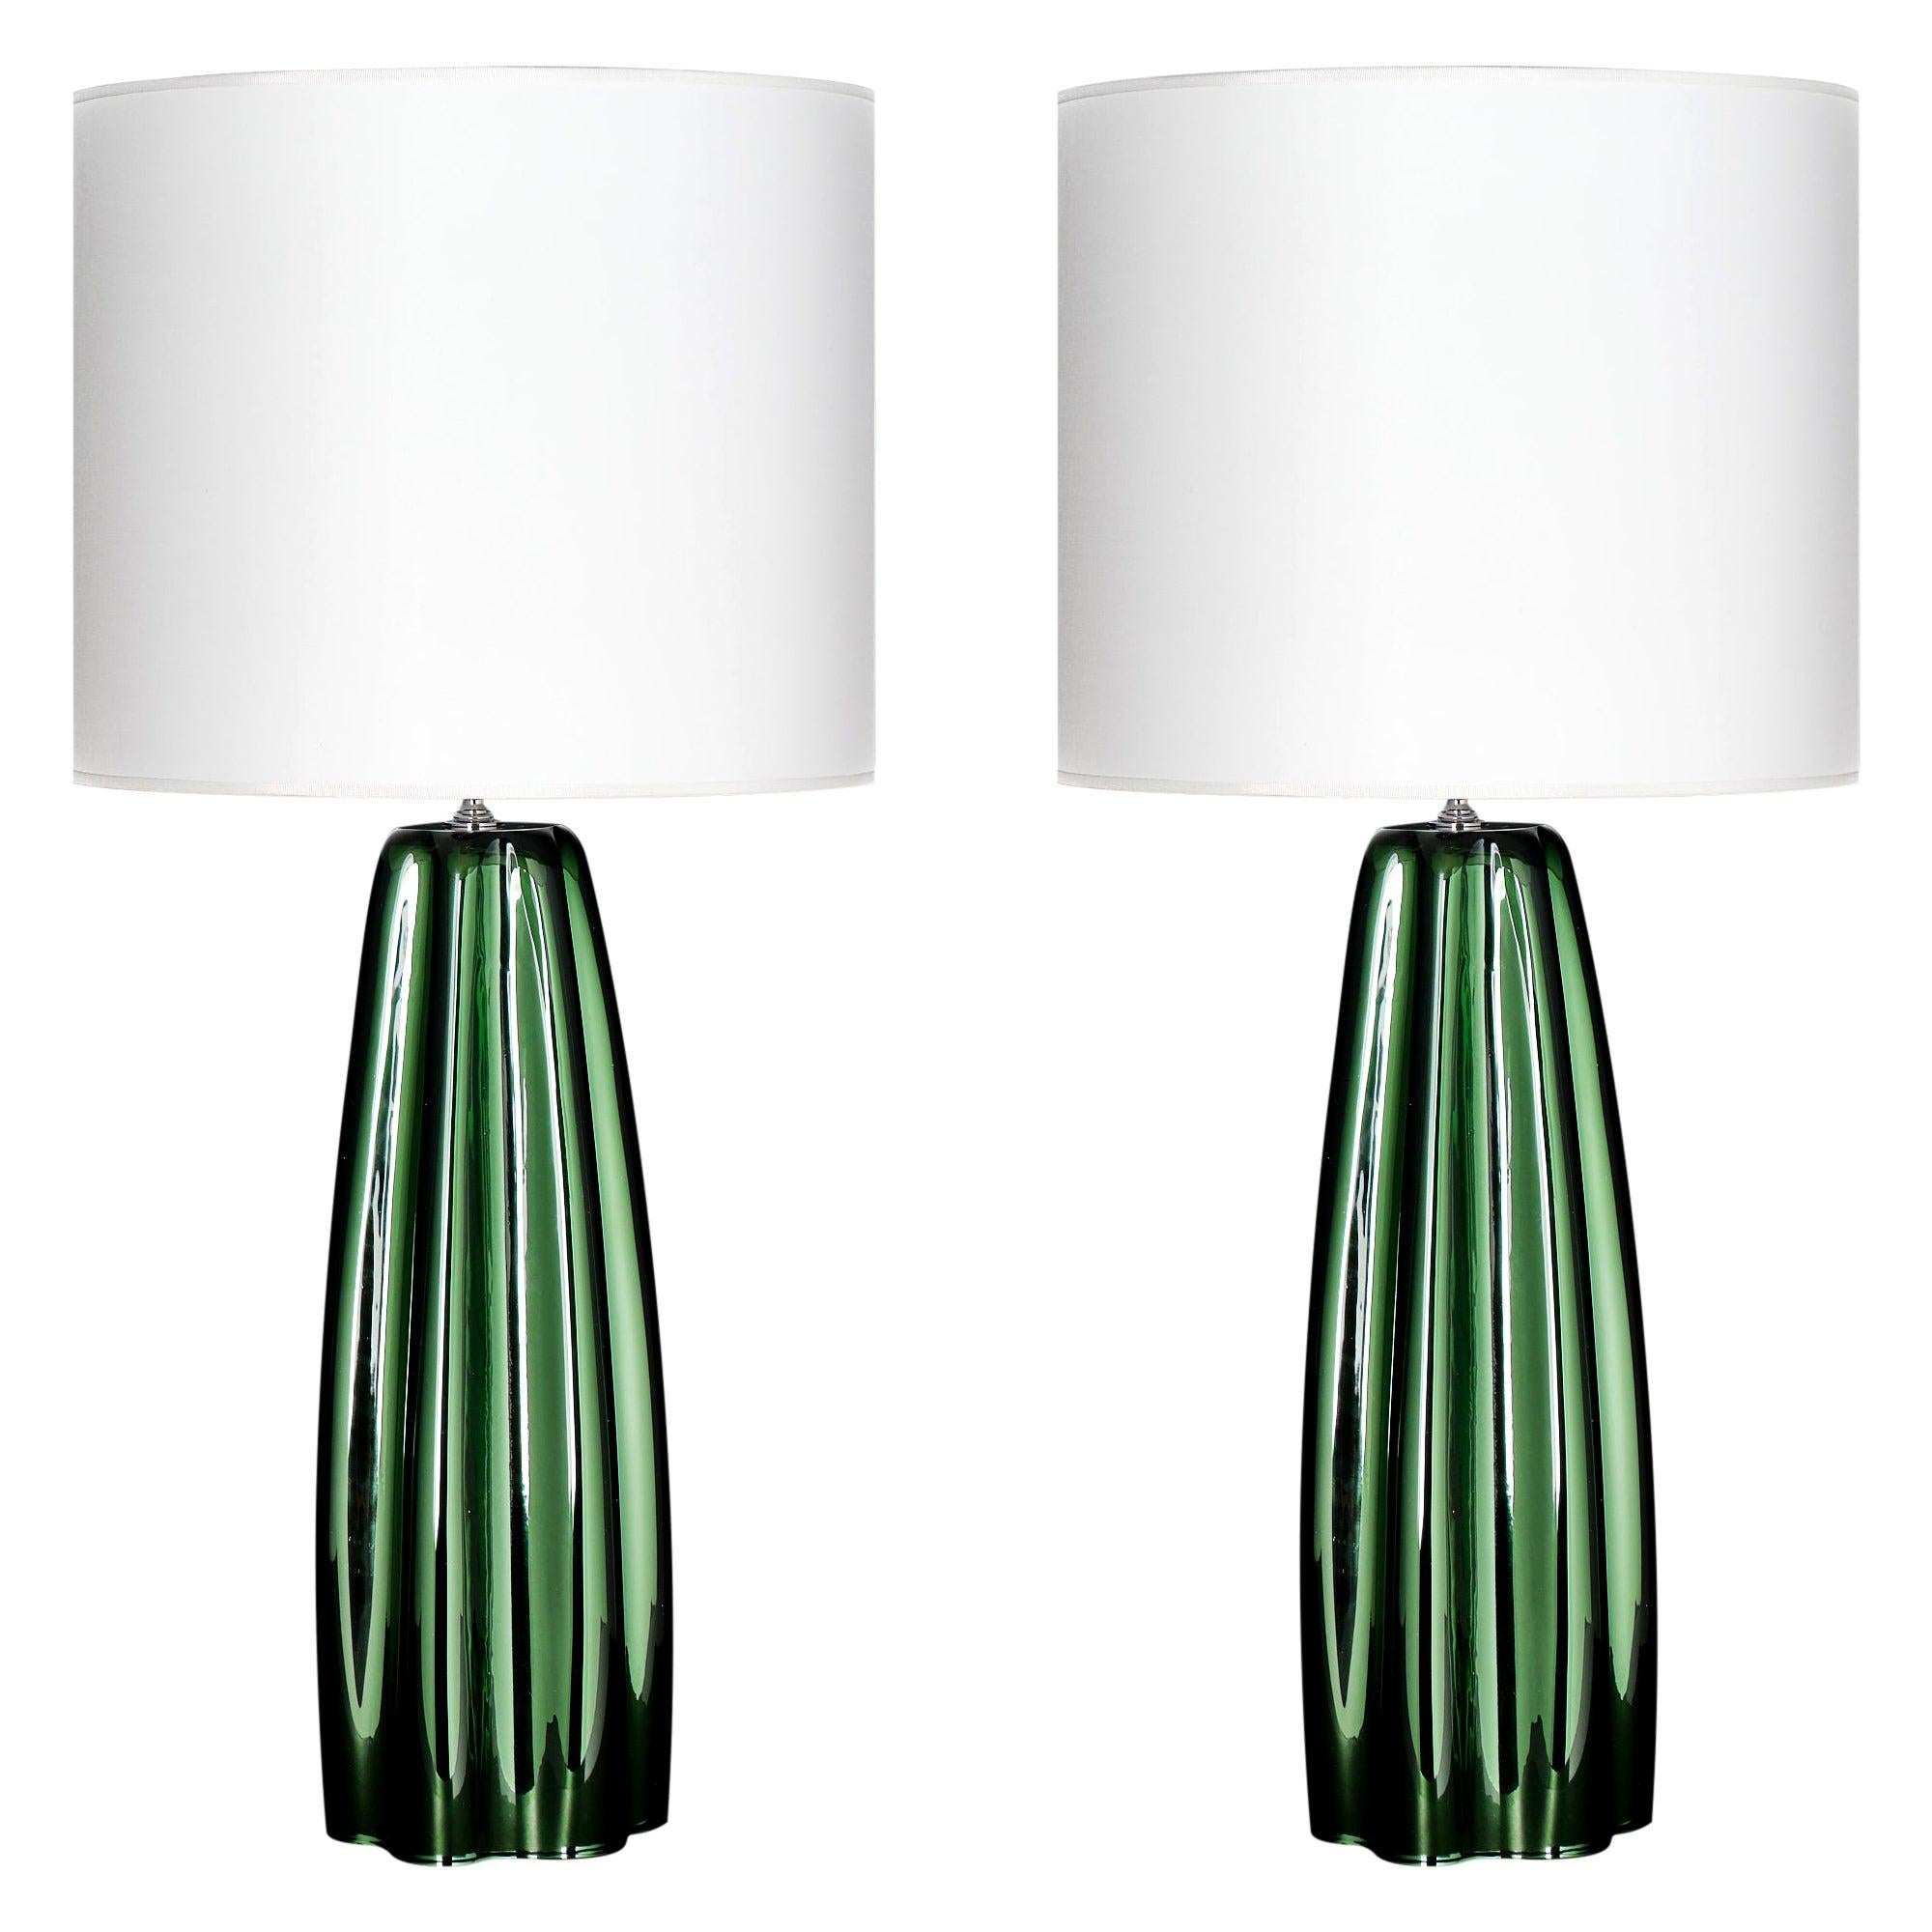 Lampen aus Muranoglas, verspiegelt, grün